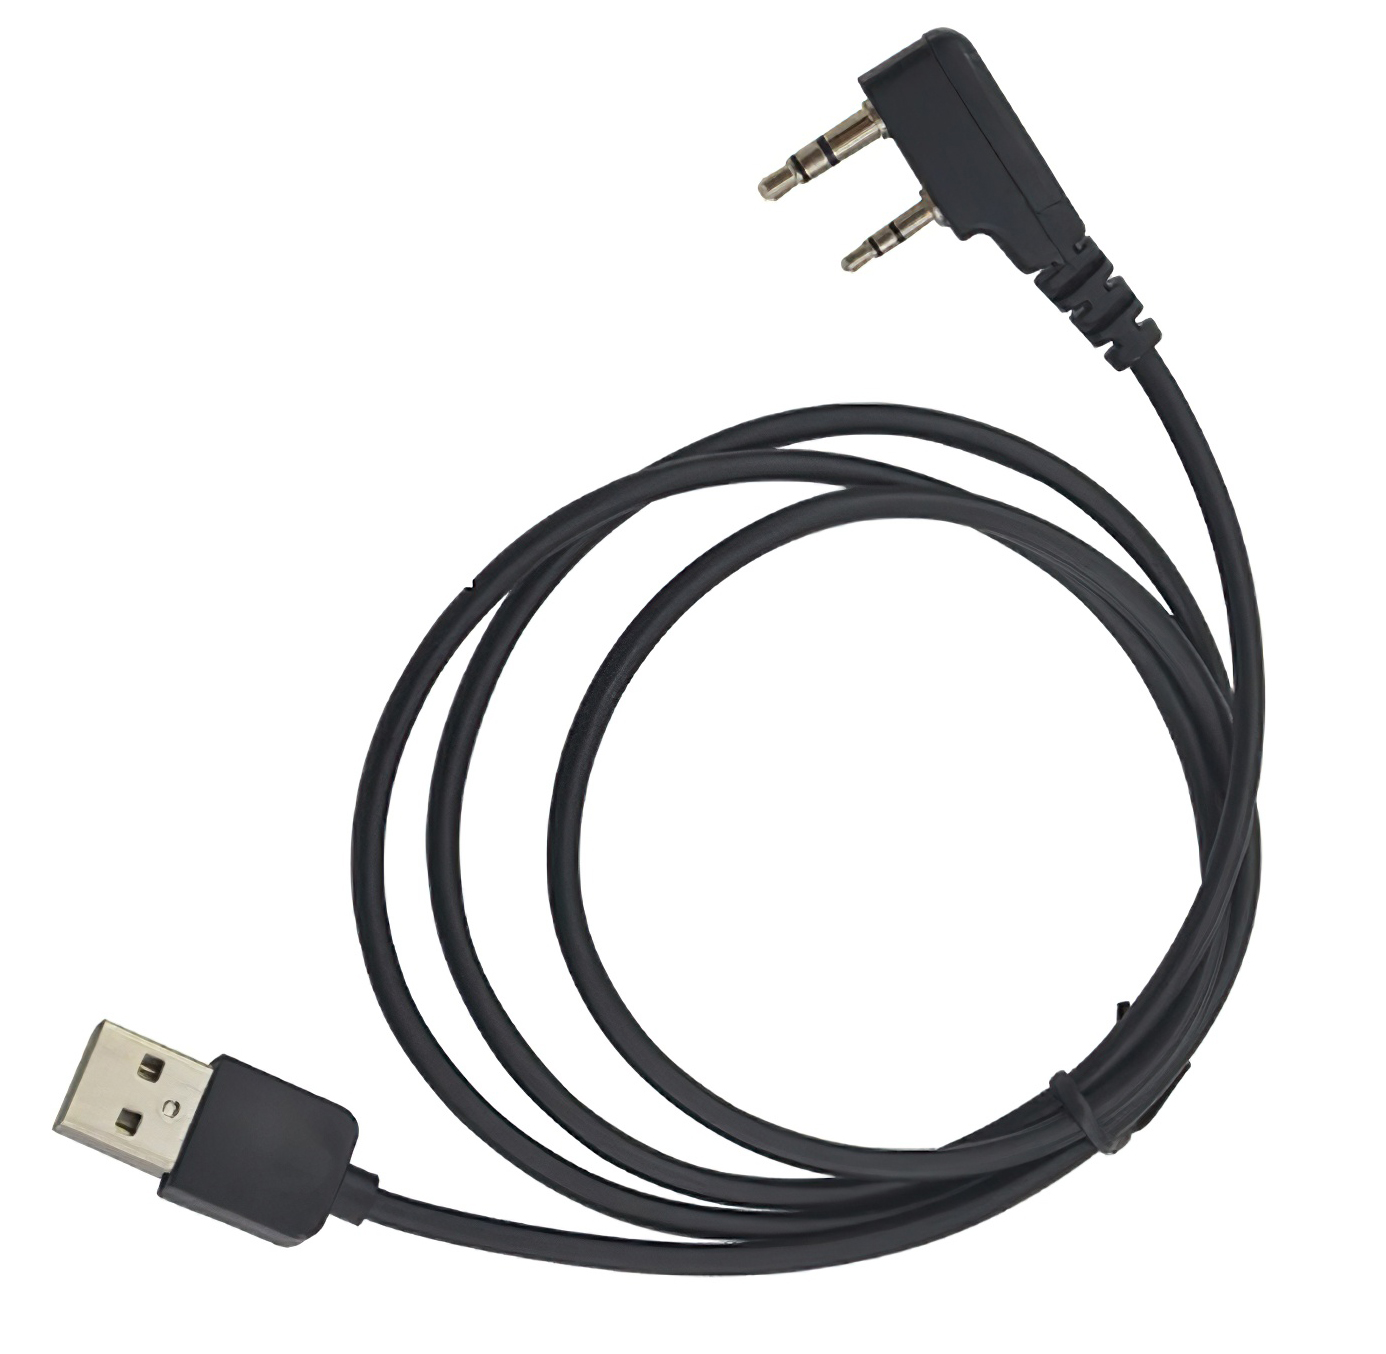 USB кабель для программирования цифровых радиостанций Baofeng DMR программатор для радиостанций uv 5r uv 62 uv 82 baofeng